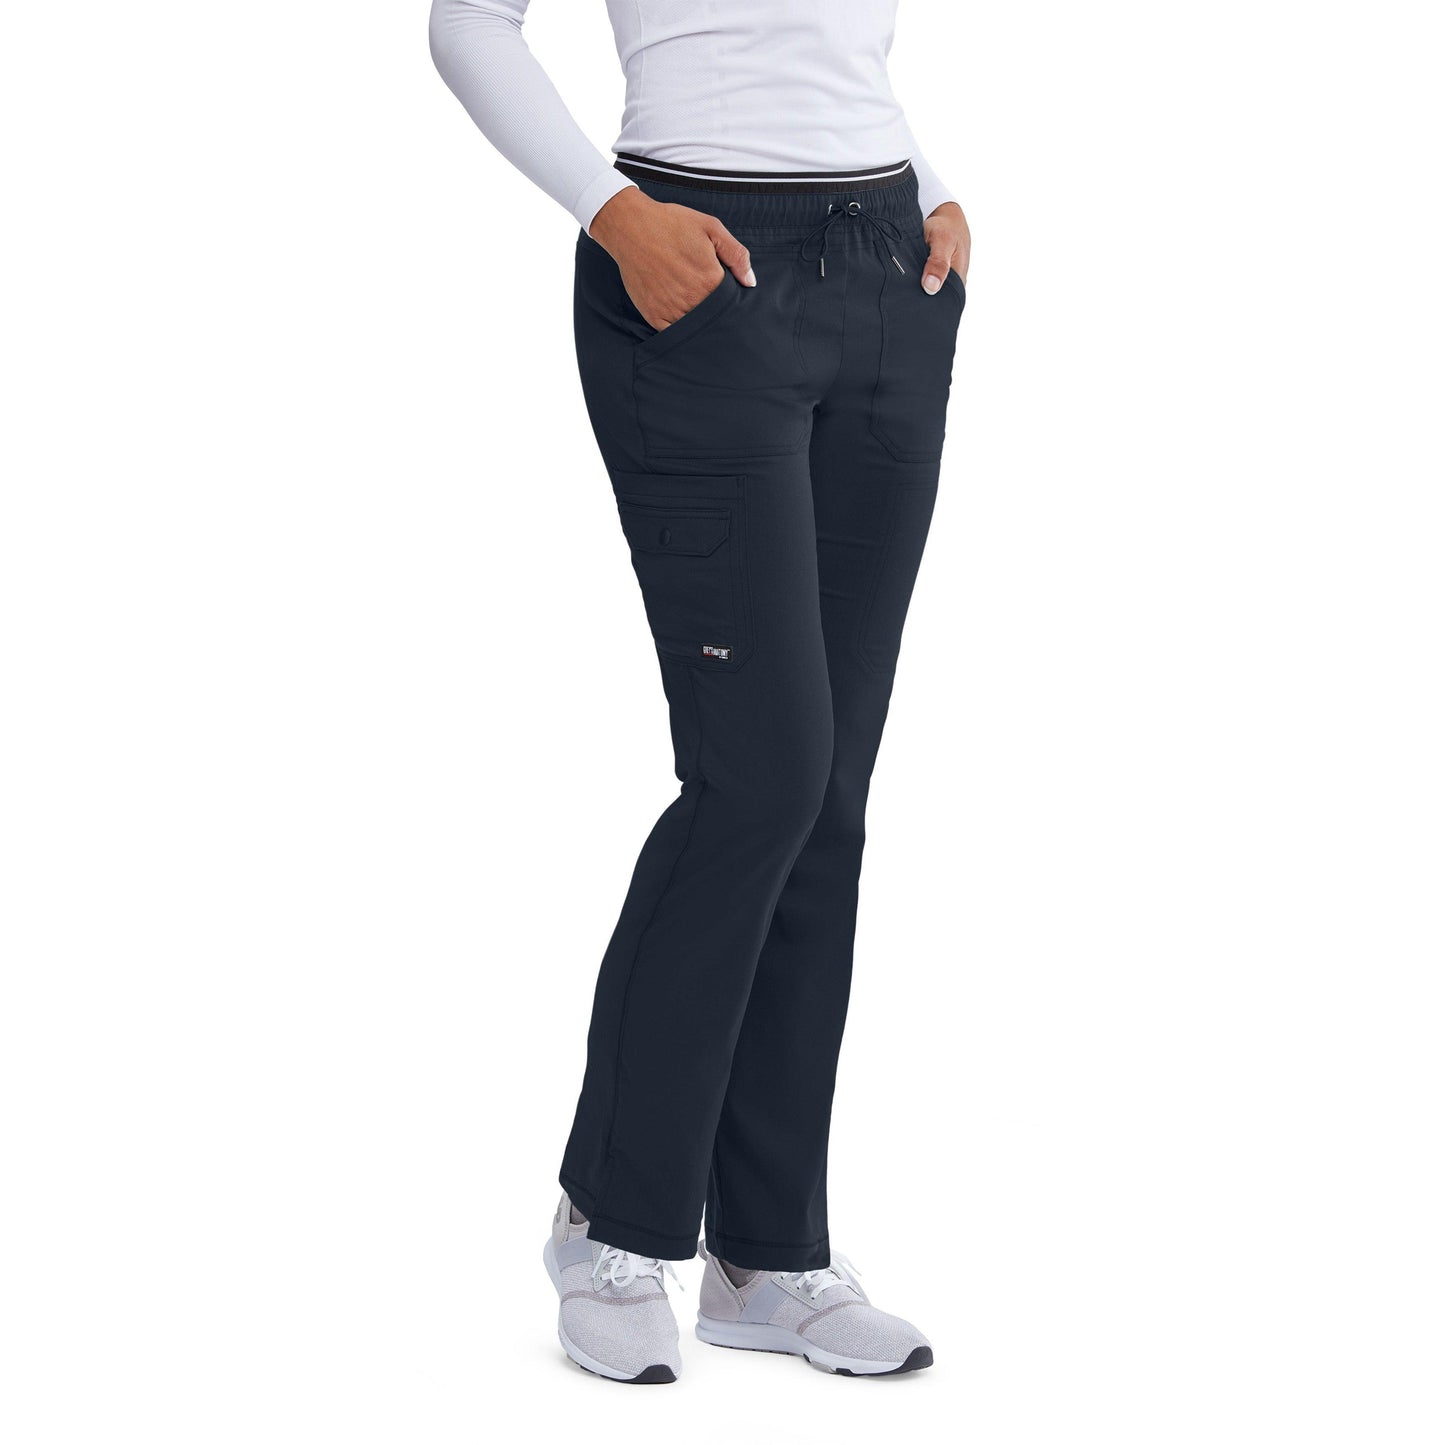 Grey's Anatomy 6 Pocket Scrub Pant Tall Women's Tall Scrub Pant Grey's Anatomy Spandex Stretch Steel S 